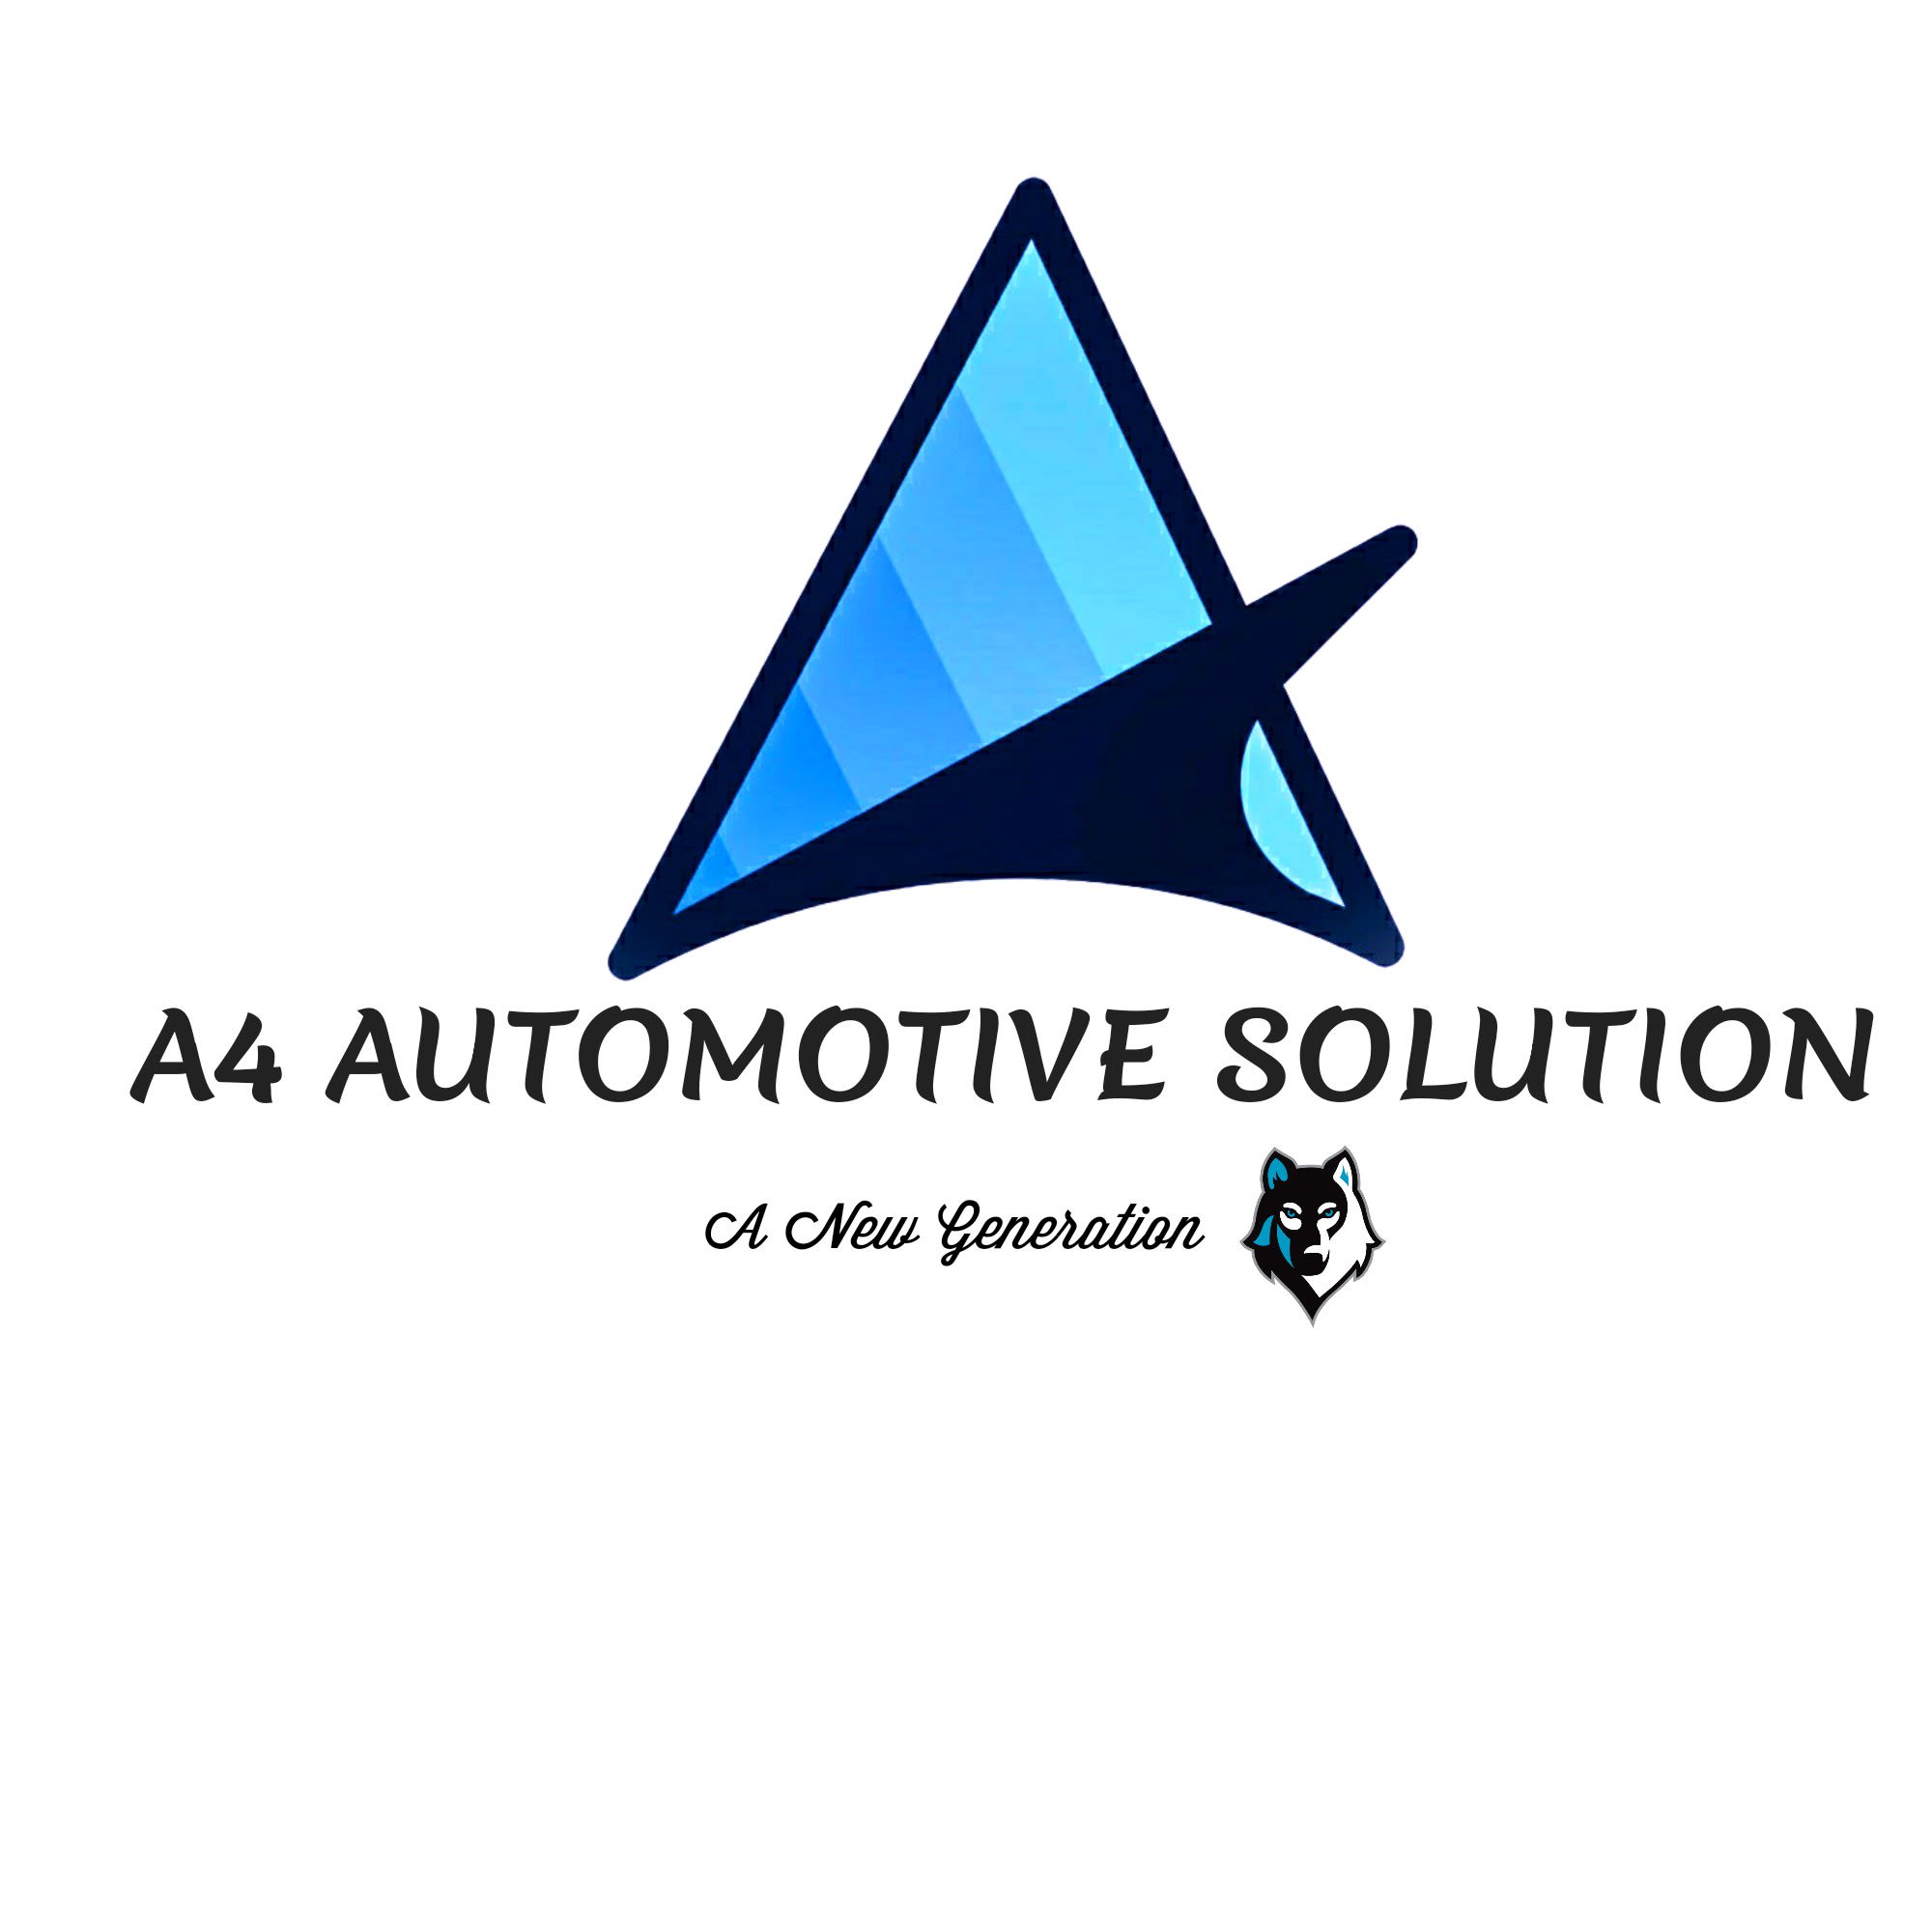 A4 AUTOMOTIVE SOLUTION